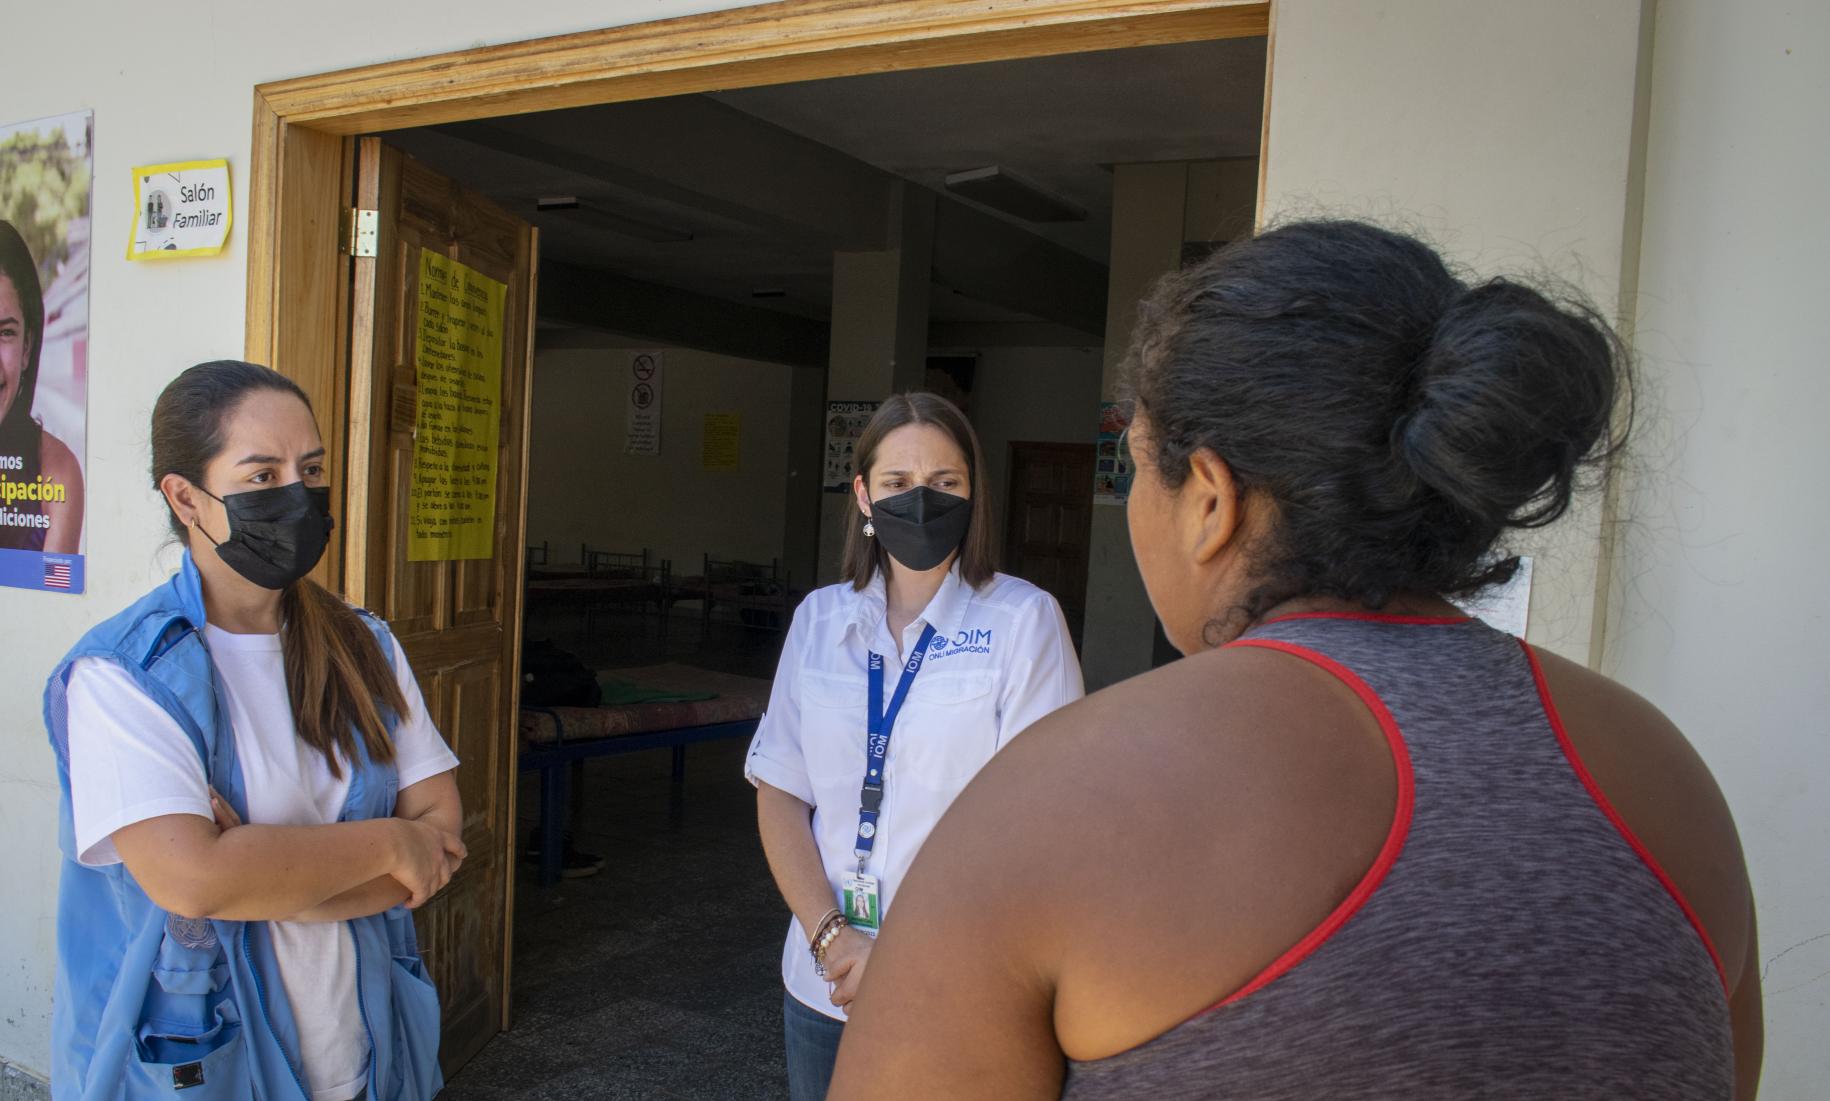 一位背对镜头站立的妇女正在与两位戴着面罩的人交谈，其中一位穿着背心，表明她是联合国系统的成员，另一位则佩戴着联合国的ID徽章。